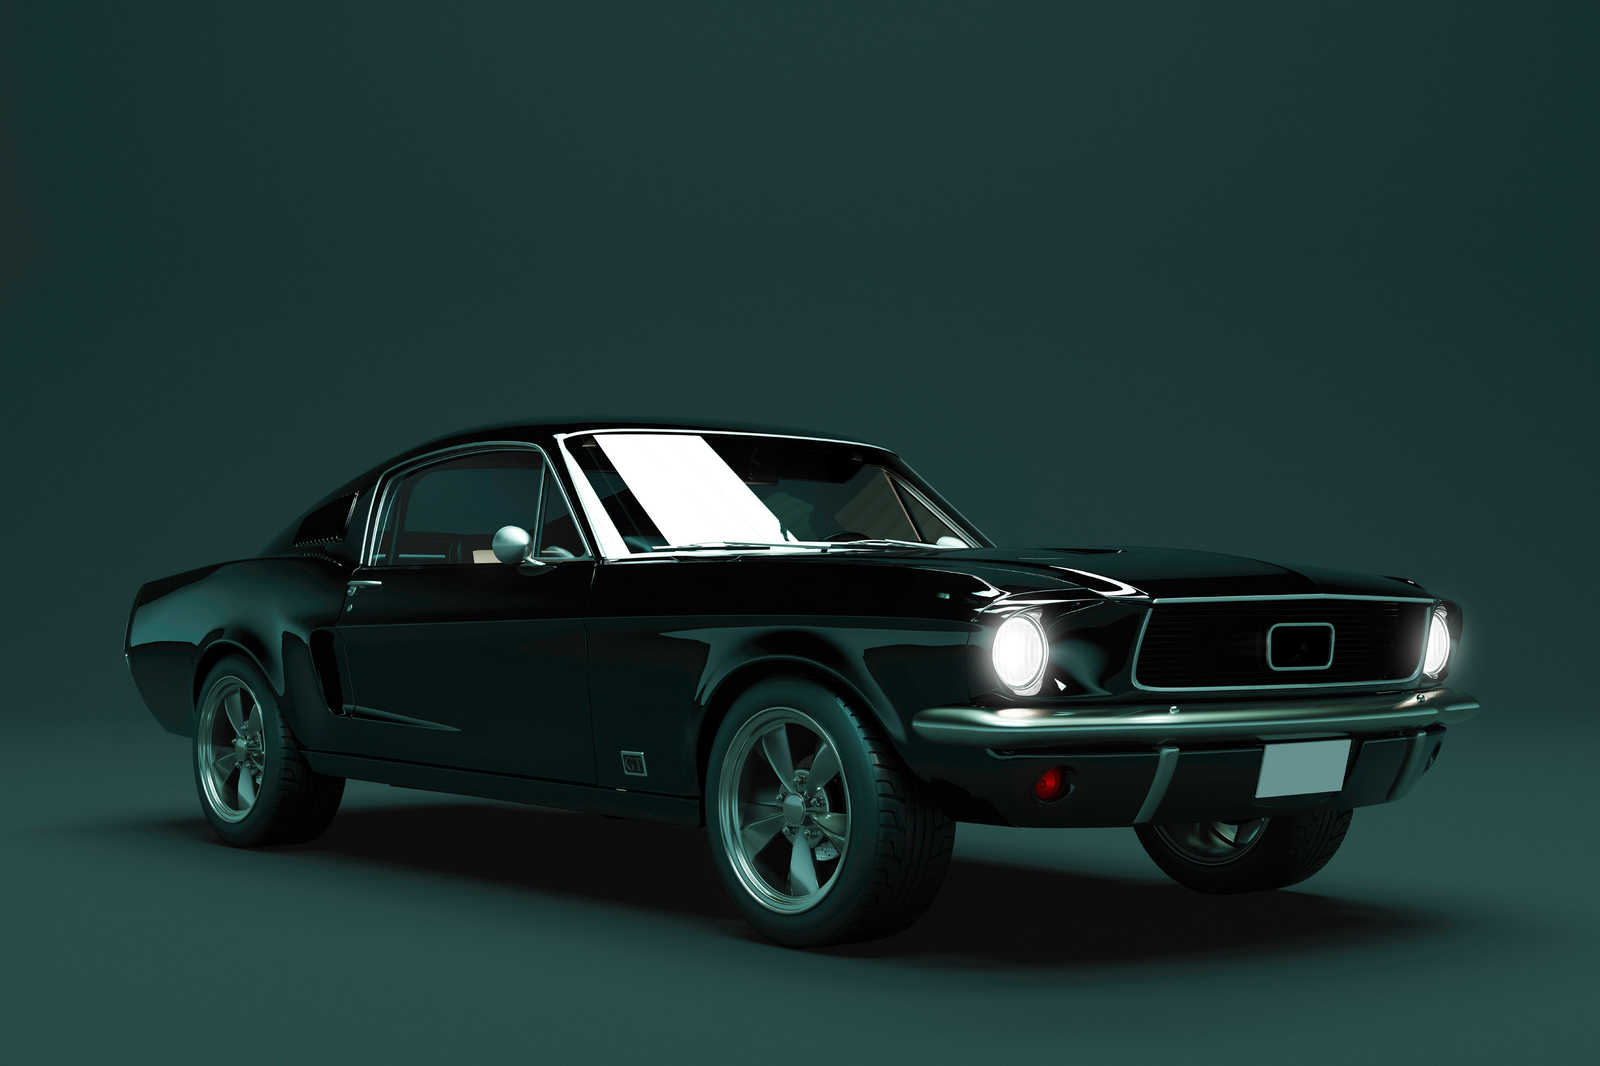             Mustang 2 - Pintura en lienzo, Coche de época Mustang 1968 - 0,90 m x 0,60 m
        